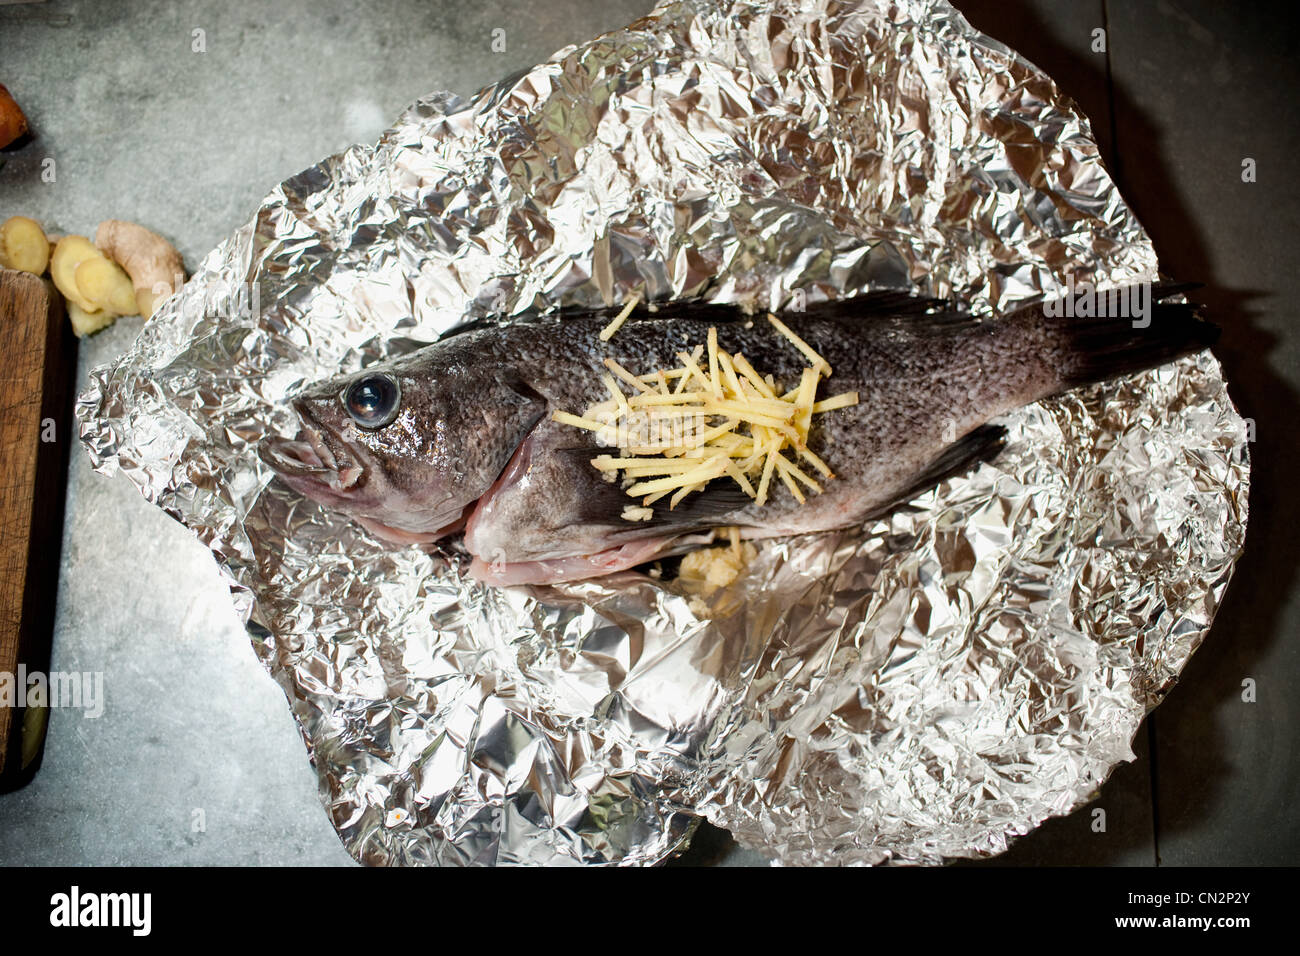 Fisch auf Alufolie Stockfotografie - Alamy